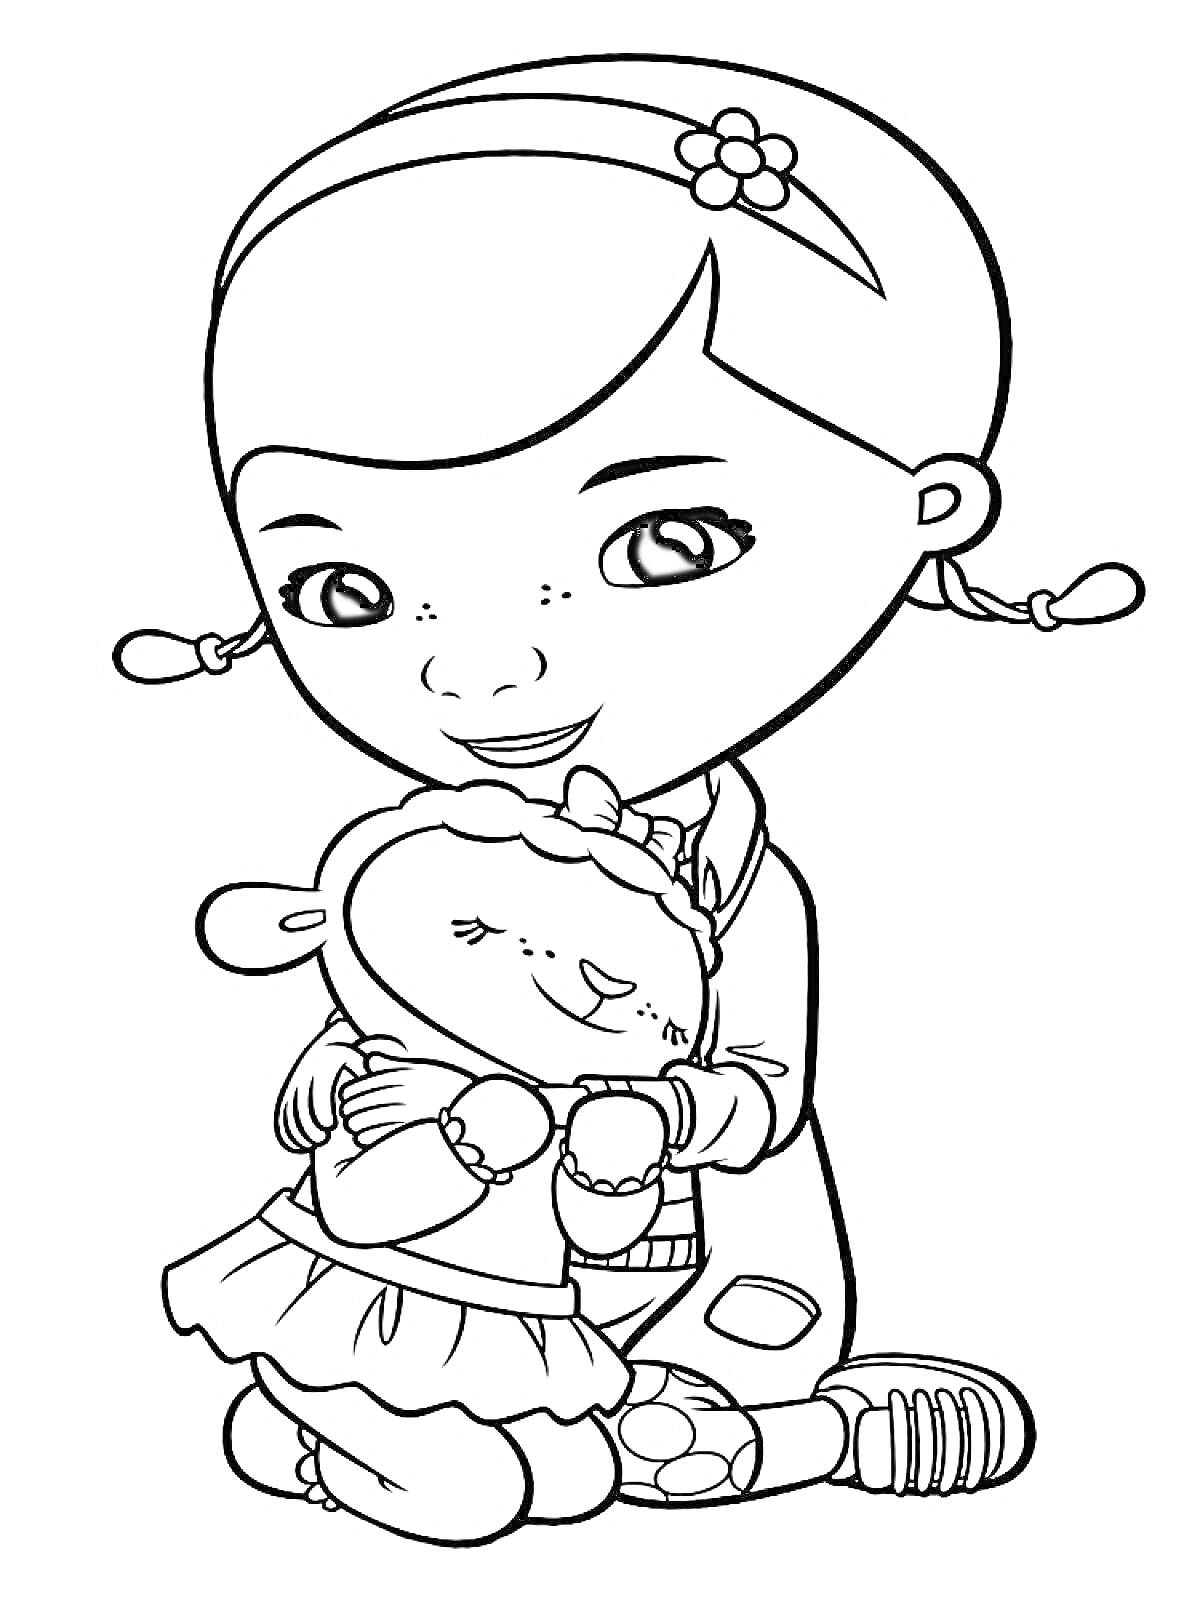 Раскраска Девочка с двумя косичками и цветком в волосах обнимает овечку в юбке